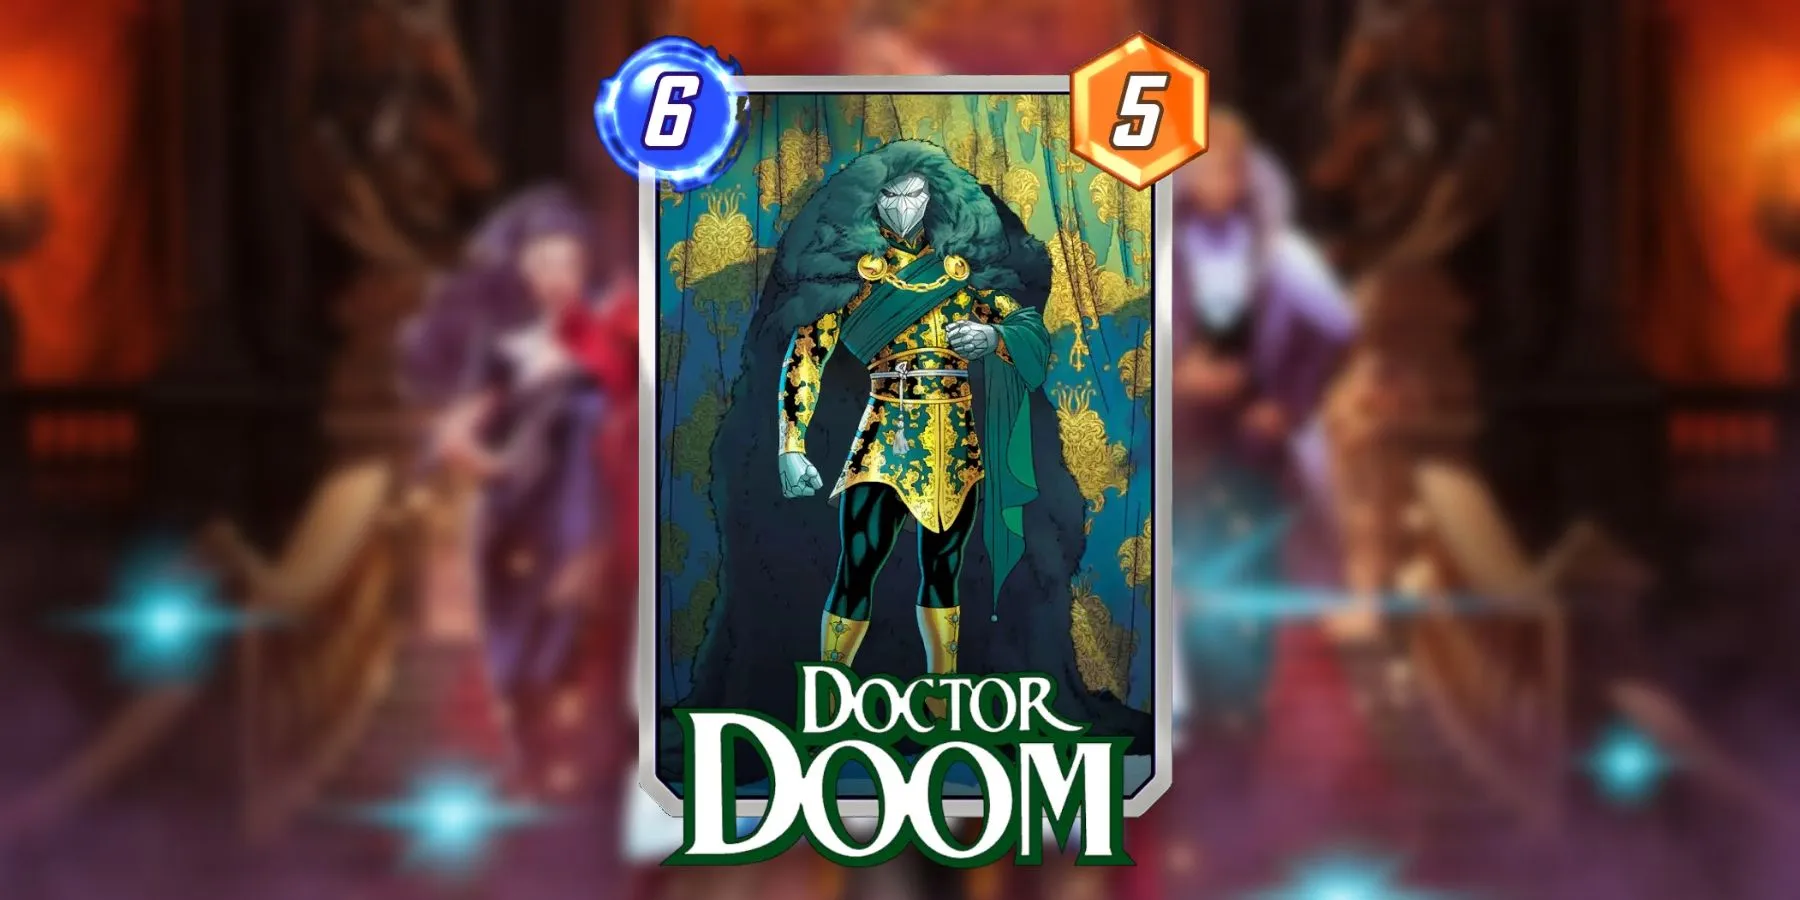 doctorm doom hellfire gala variant in marvel snap.